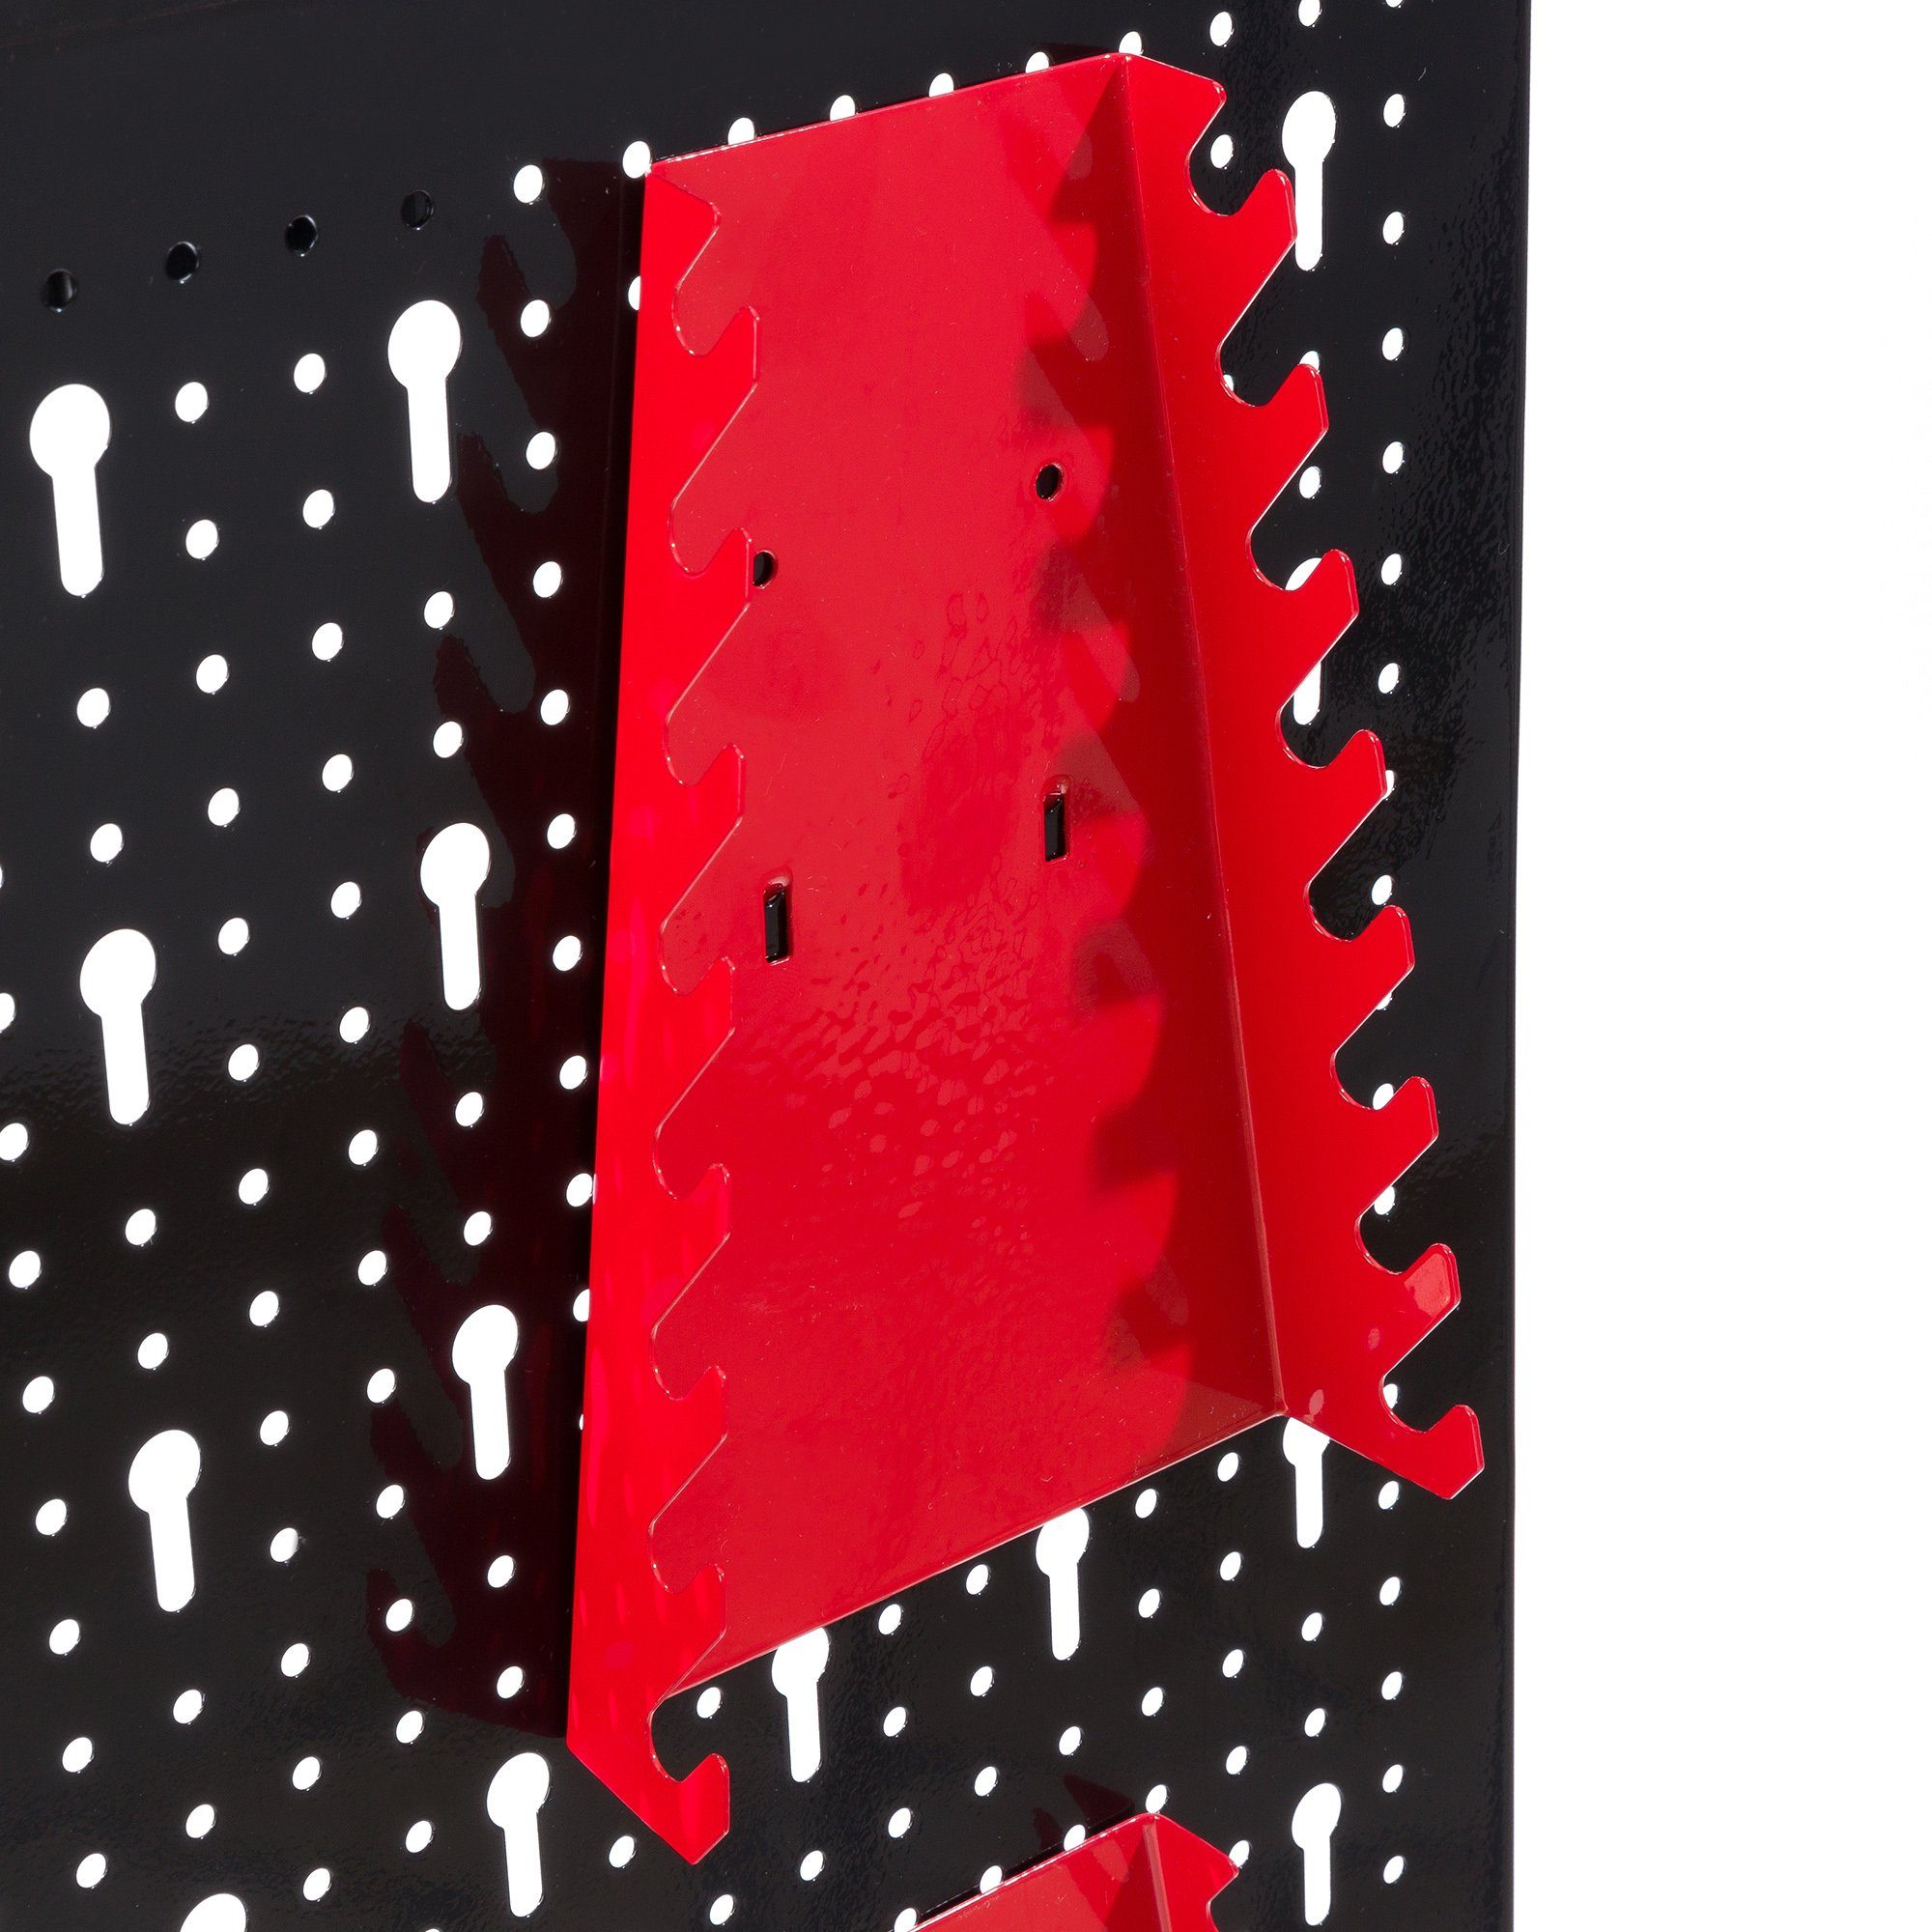 Arebos Lochwand Werkzeugwand dreiteilig, 17-teiliges 17 Rot/Blau, (Set) mit Haken, 3 Stk., Hakenset Schwarz/Rot